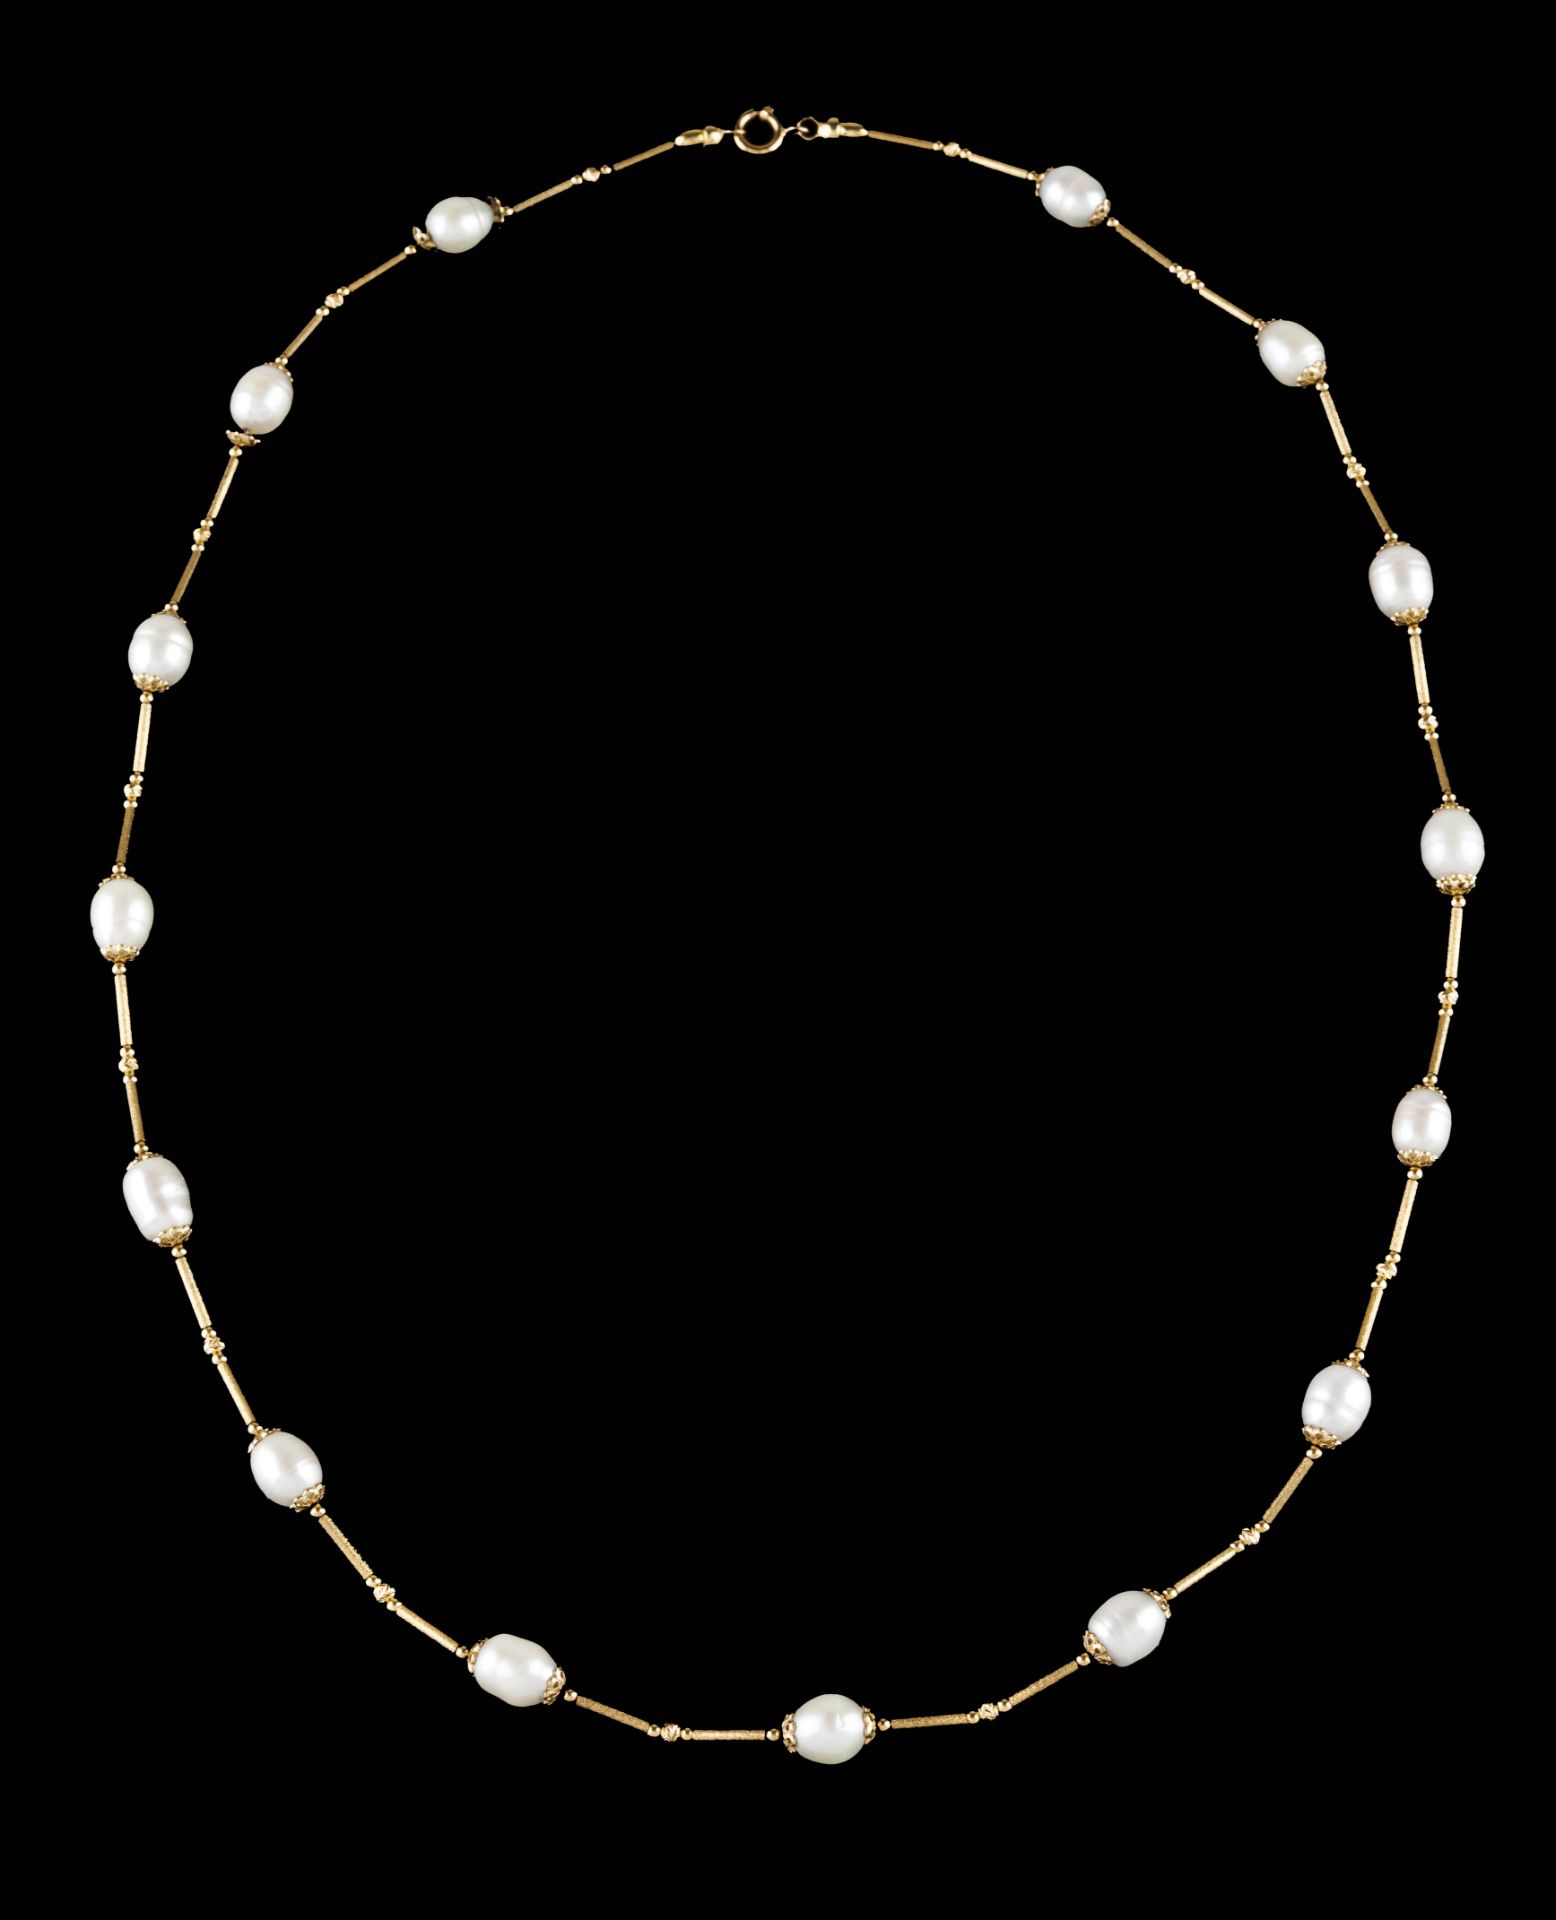 A necklace